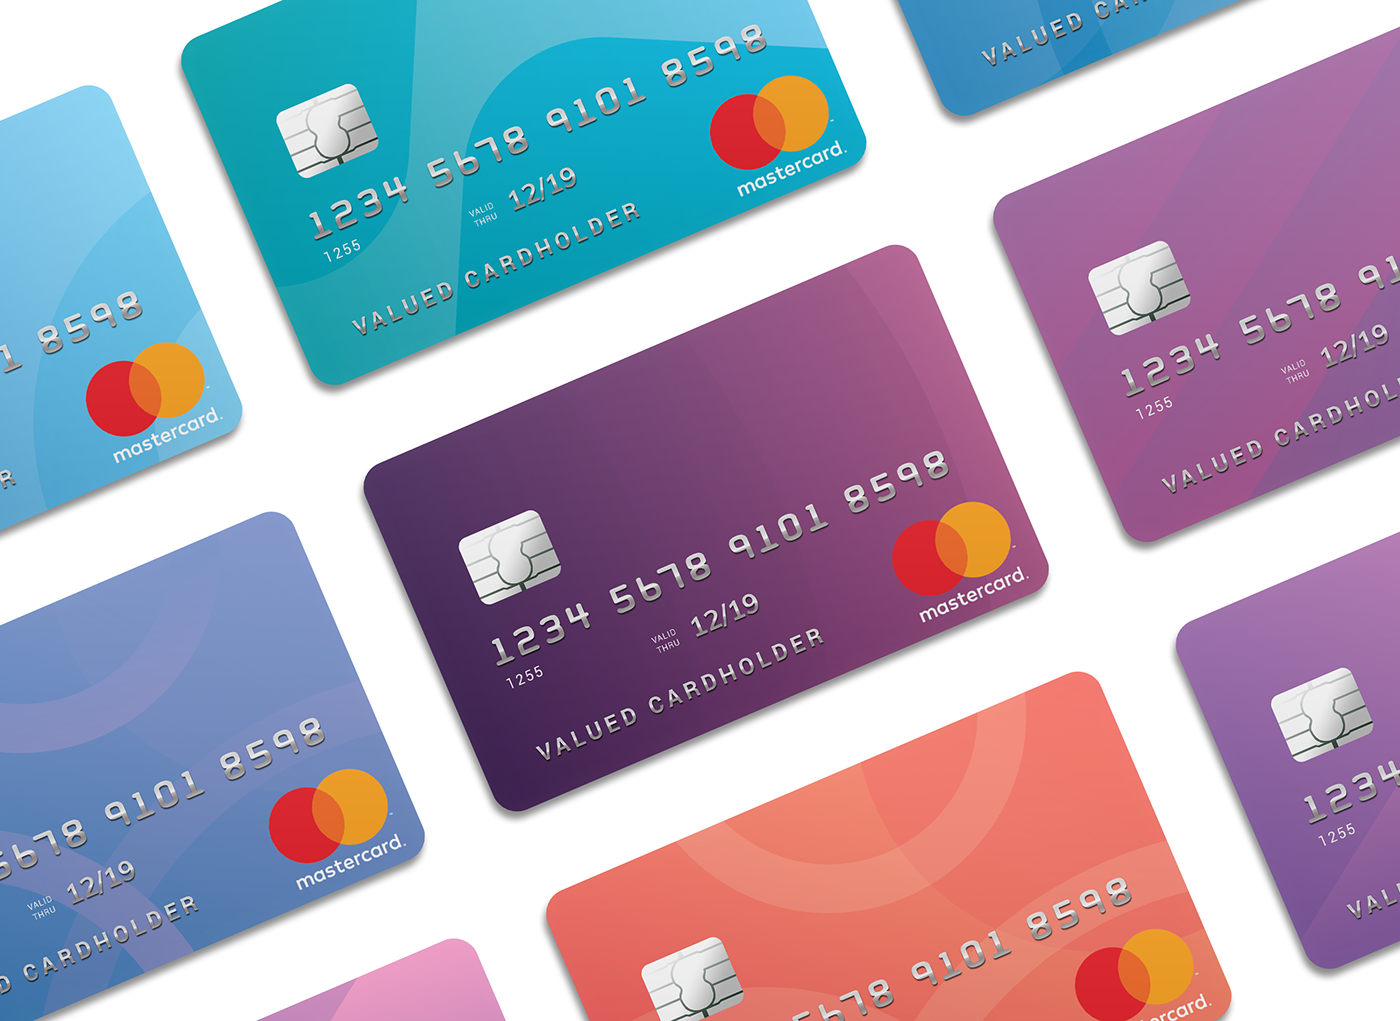 card credit card Fin-Tech finance Bank